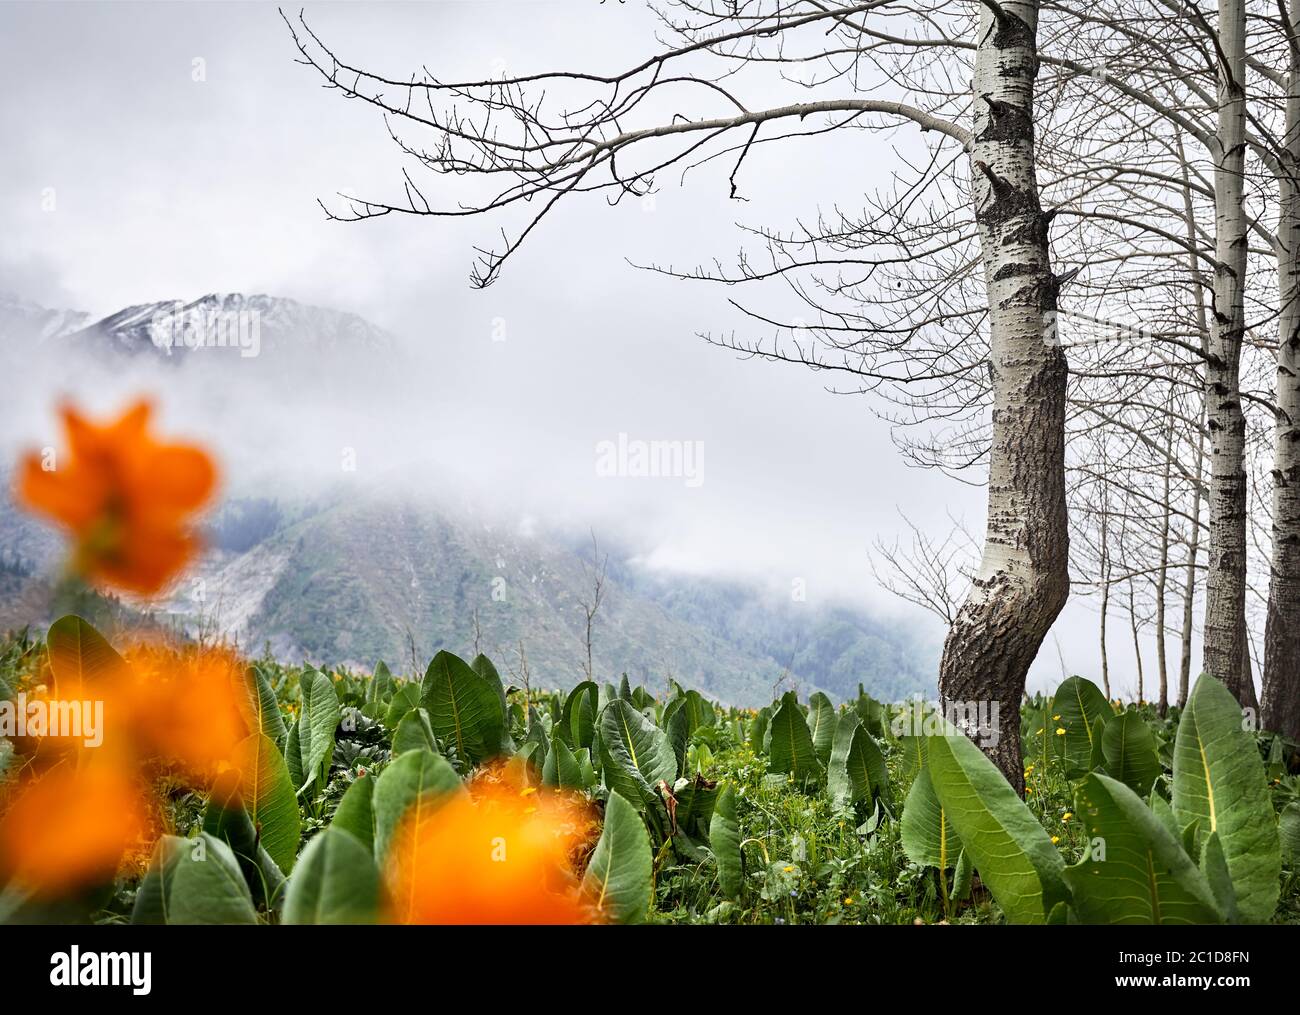 Splendido scenario della foresta primaverile contro le montagne foggose con neve. Concetto di outdoor e di escursionismo Foto Stock